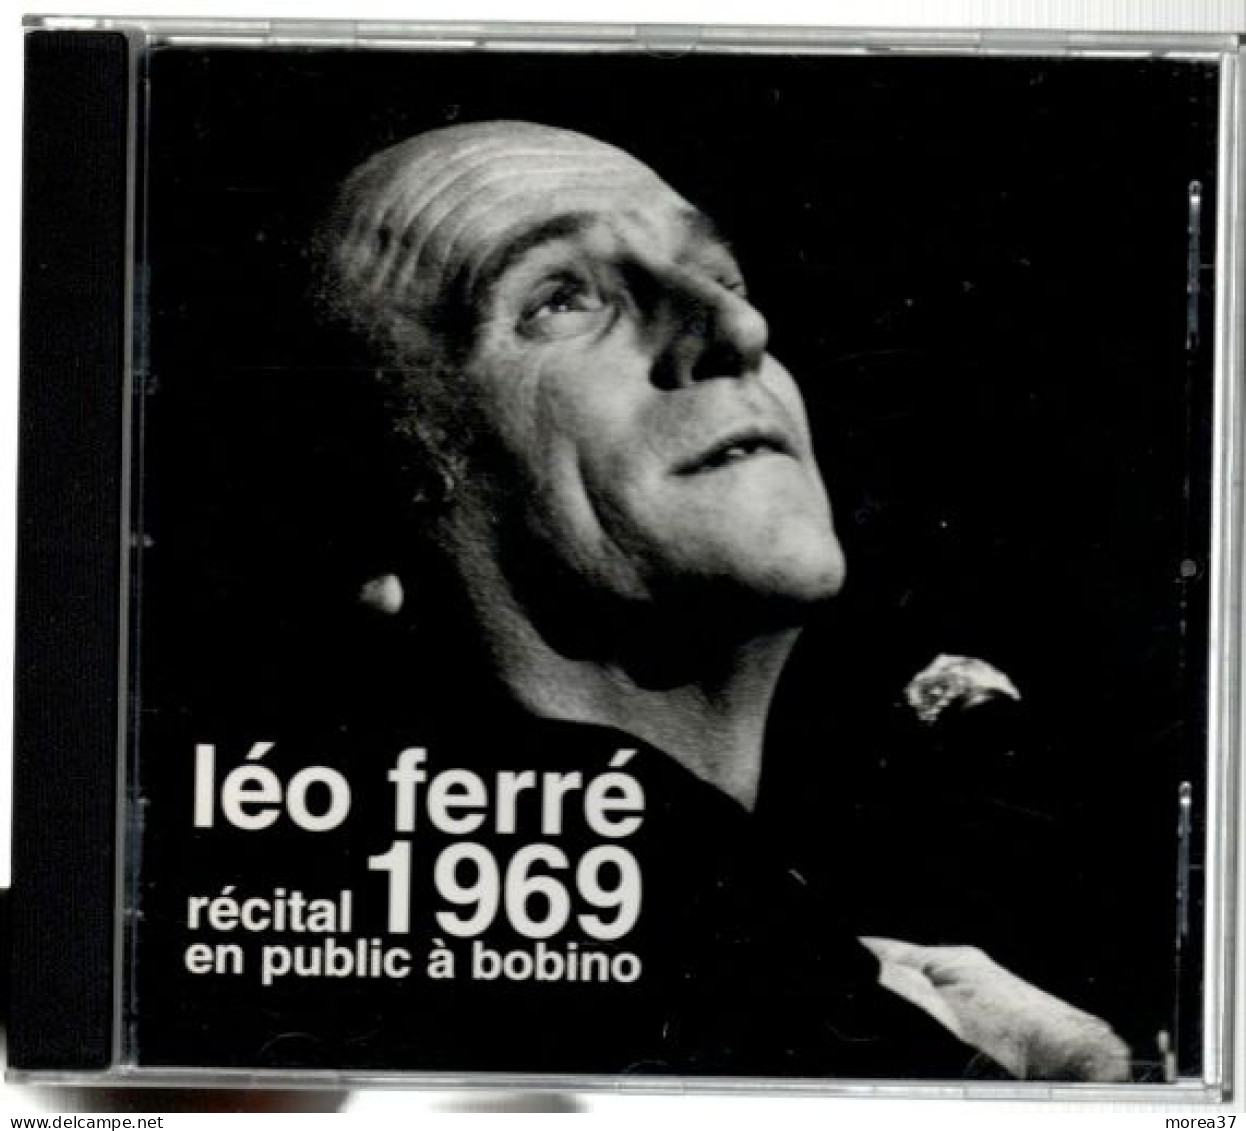 LEO FERRE  1969 Récital En Public à Bobino   (C02) - Other - French Music